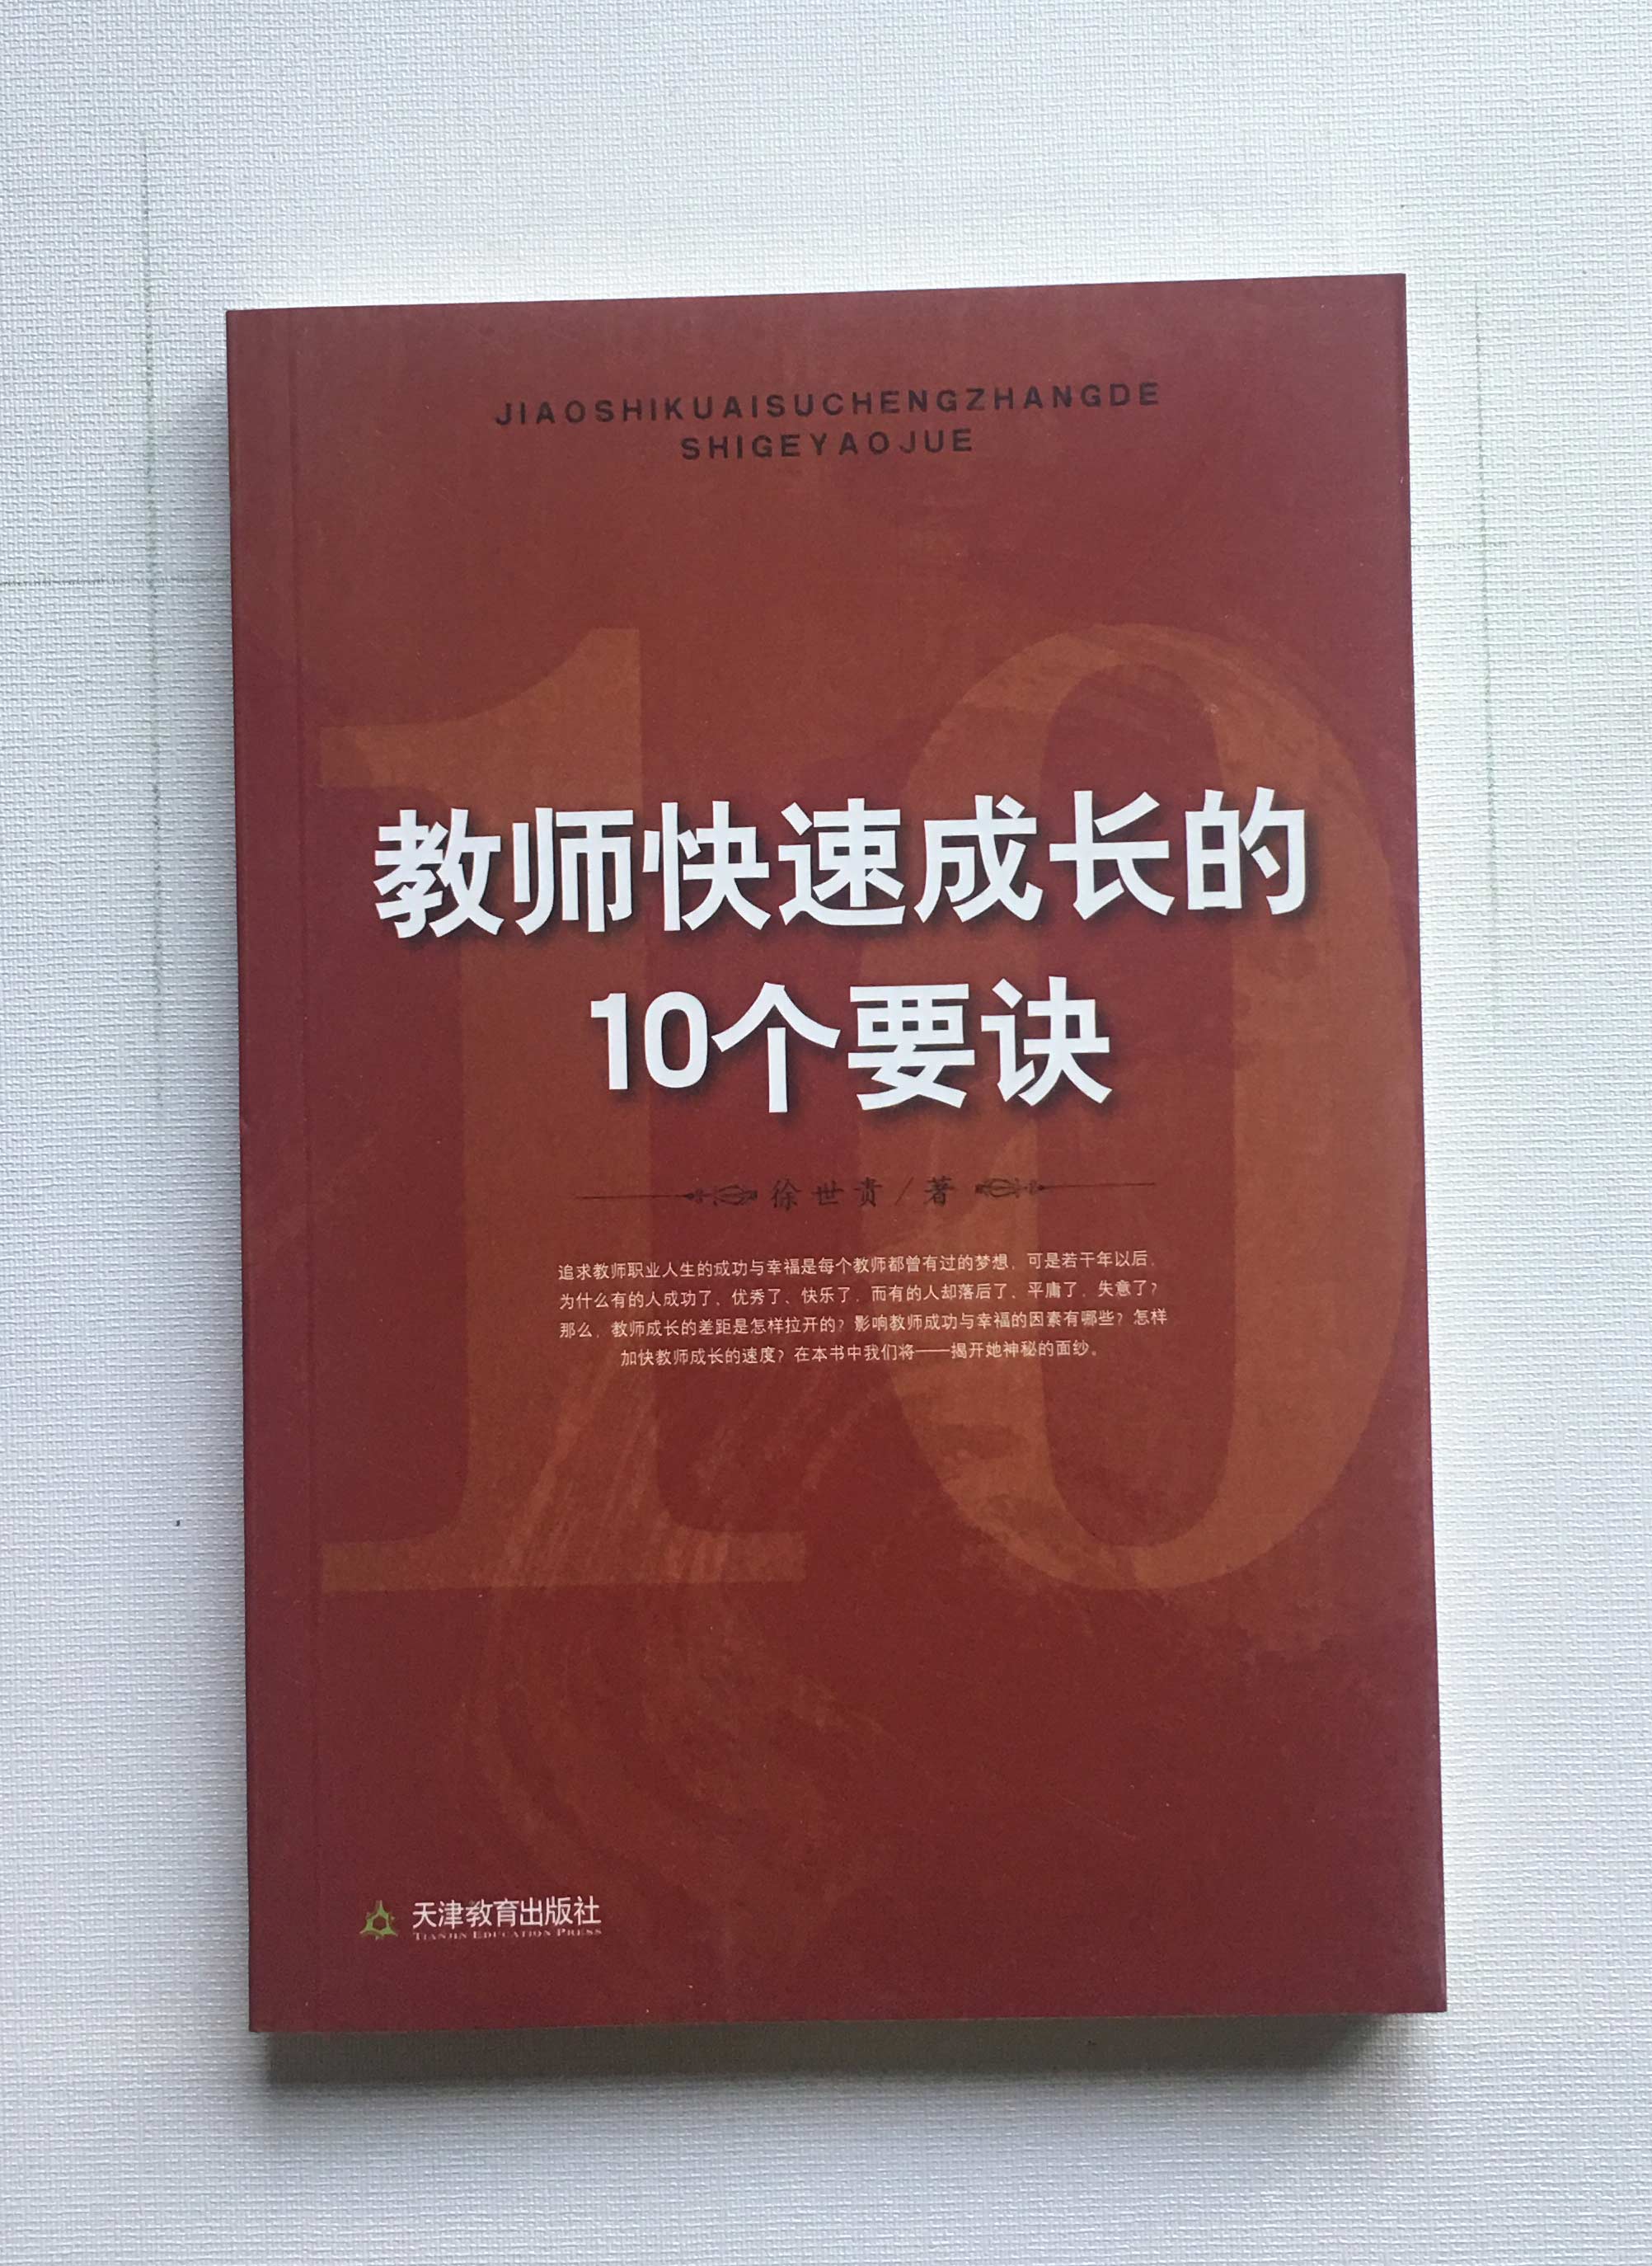 10 Tips for Teachers' Rapid Growth Xu Shigui Priced at 30 yuan Tianjin Education Publishing House